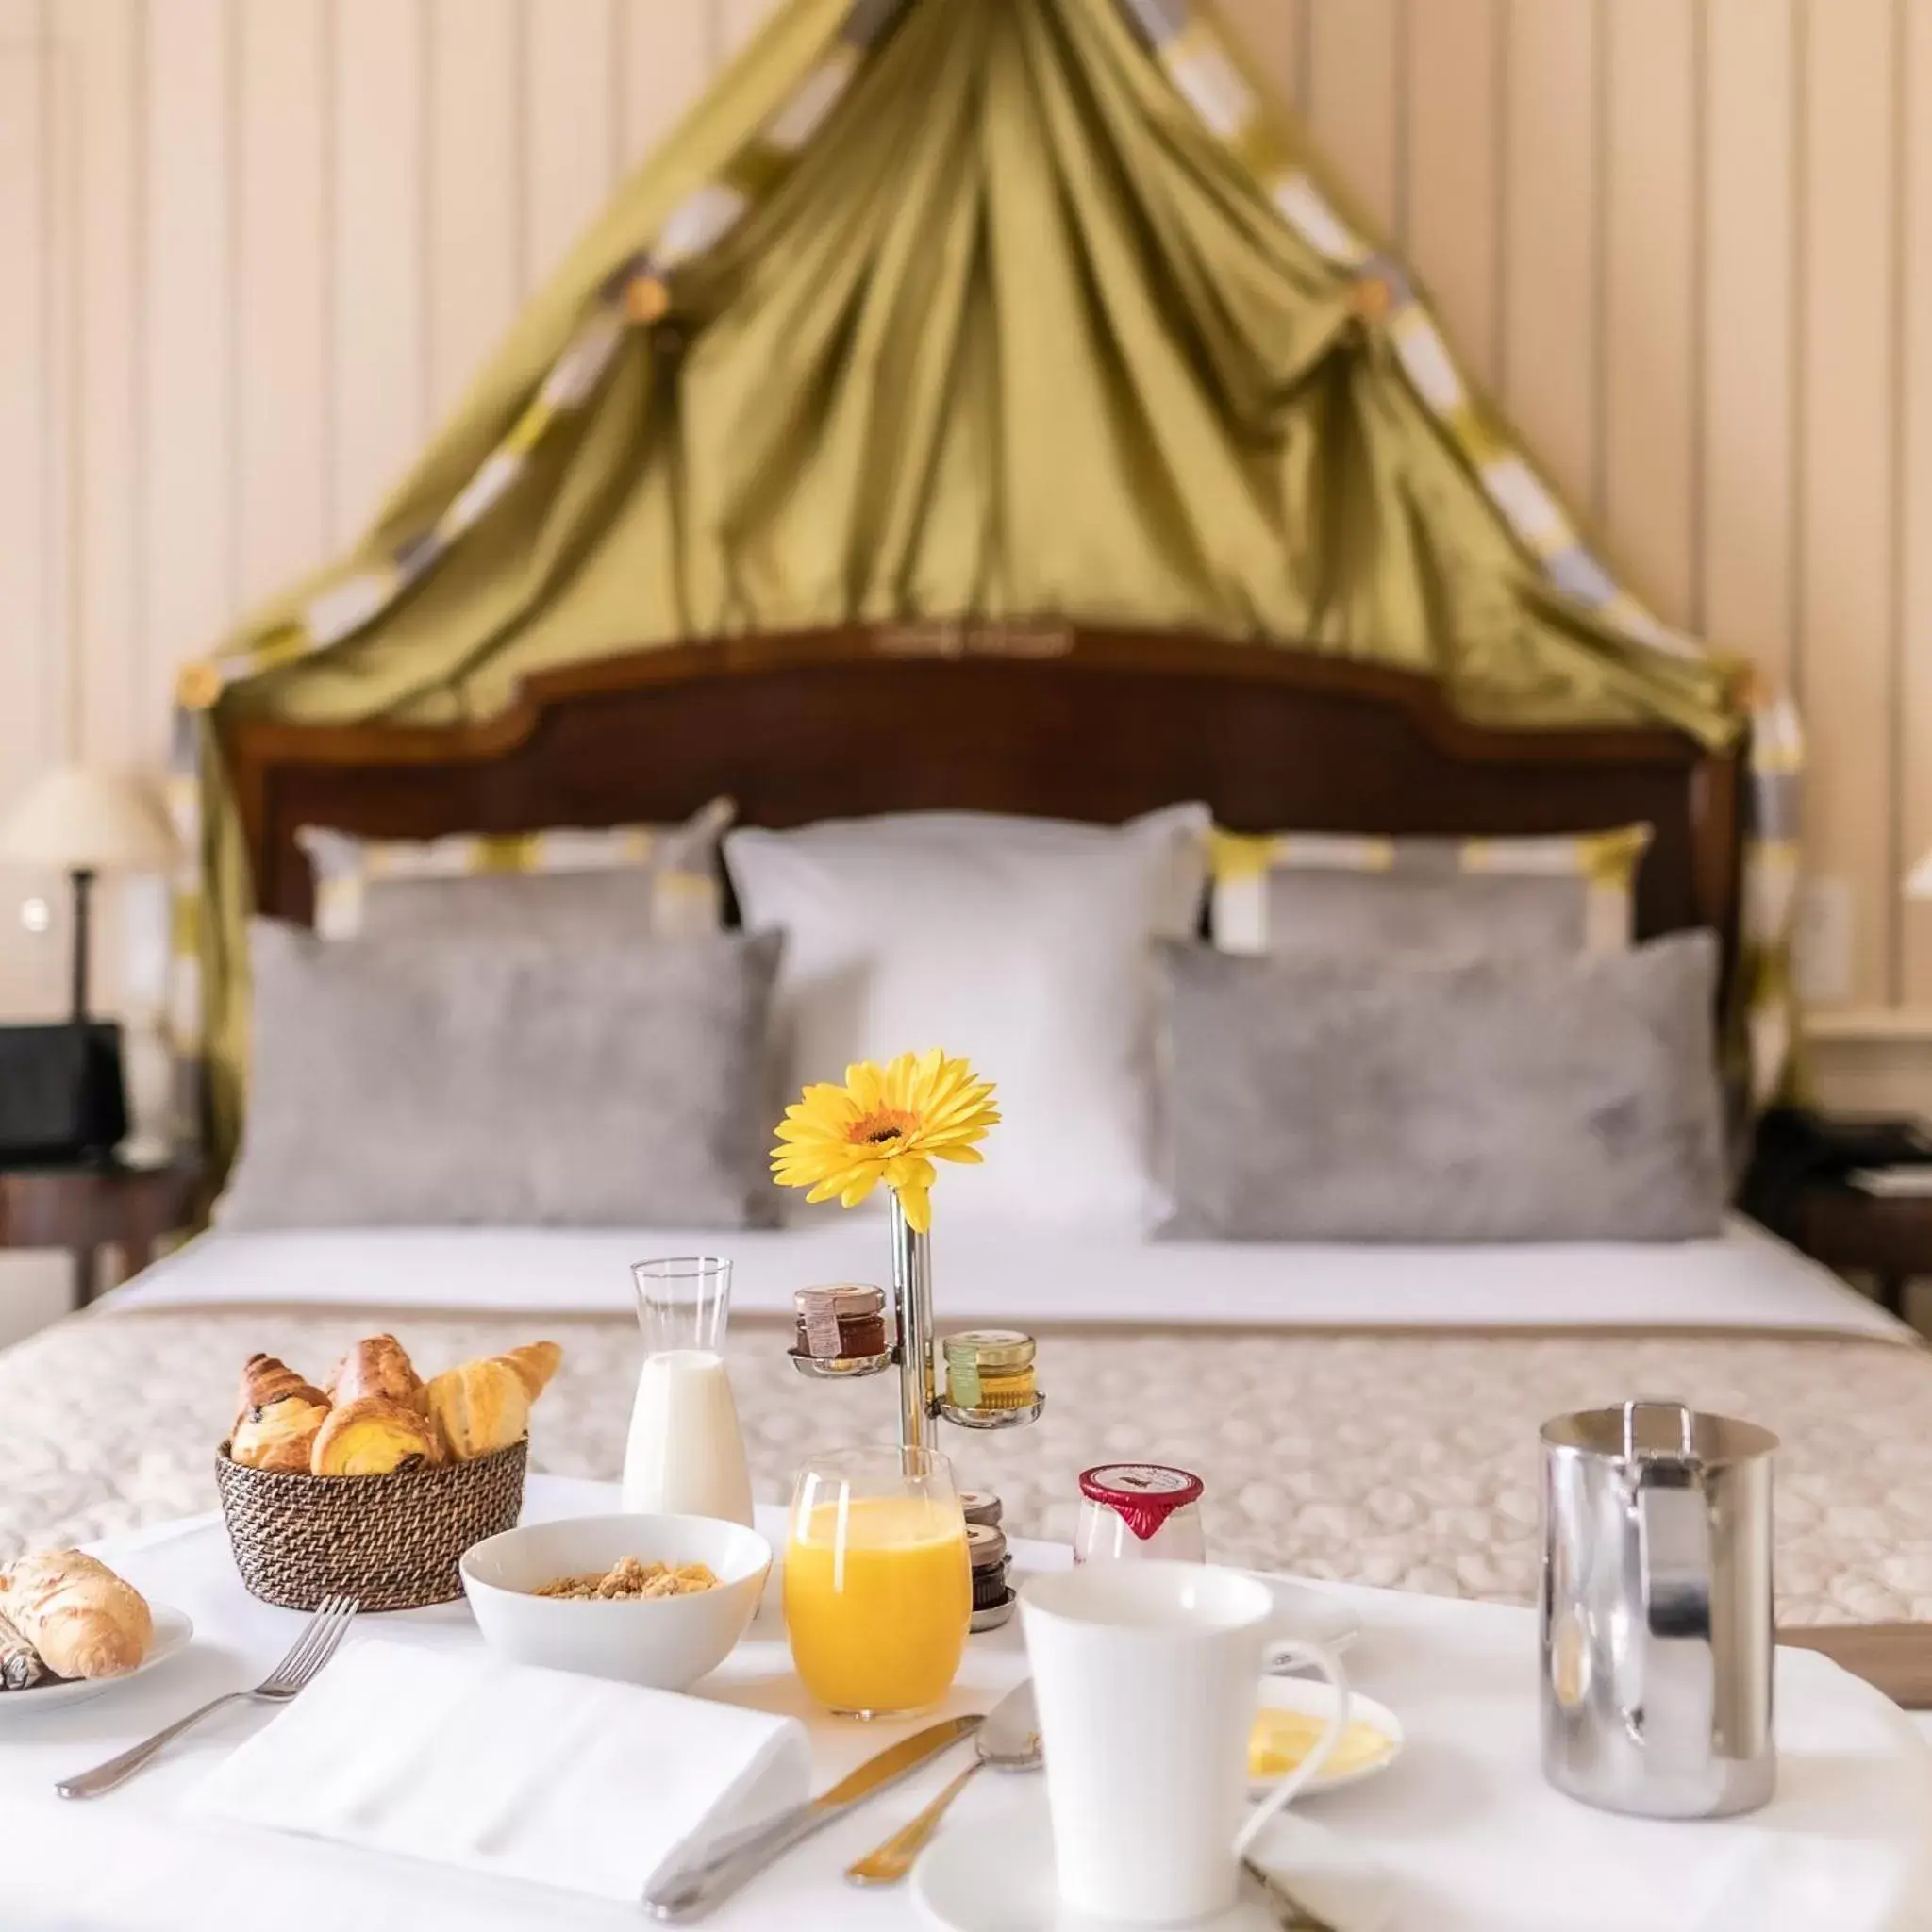 Breakfast in Hotel Napoleon Paris